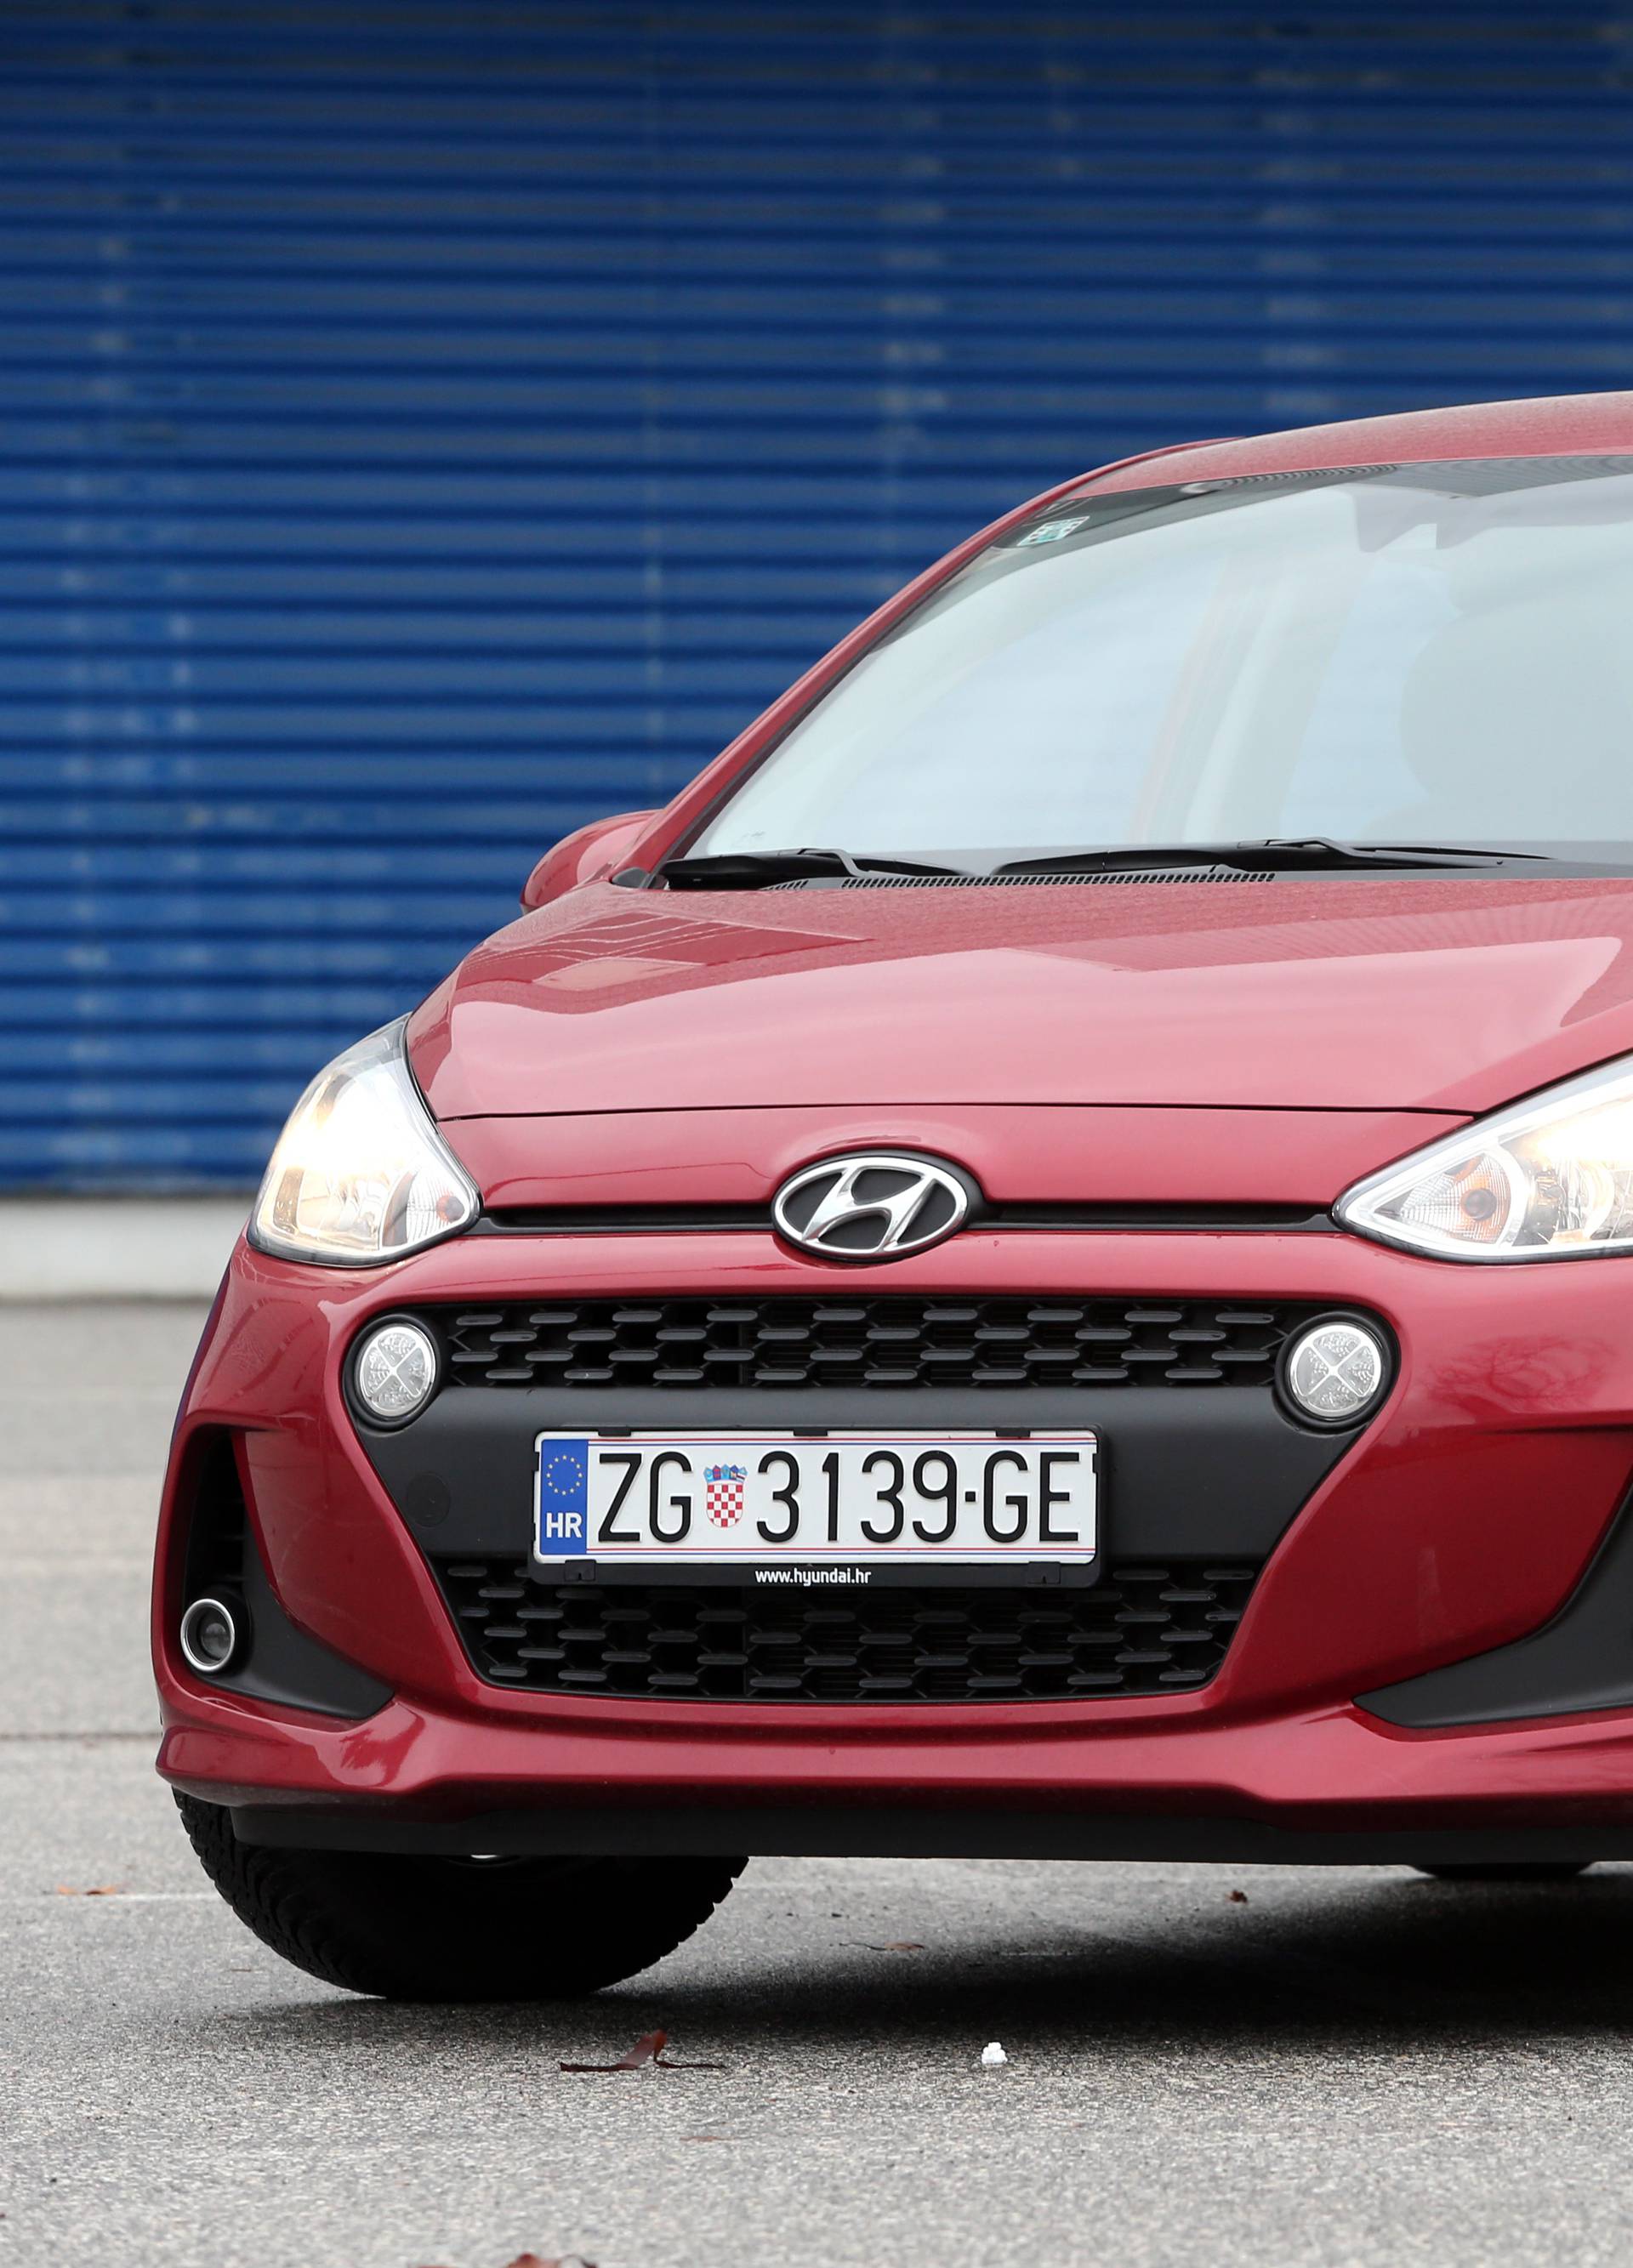 Testirali smo Hyundai i10: Mali gradski auto ozbiljniji od rivala